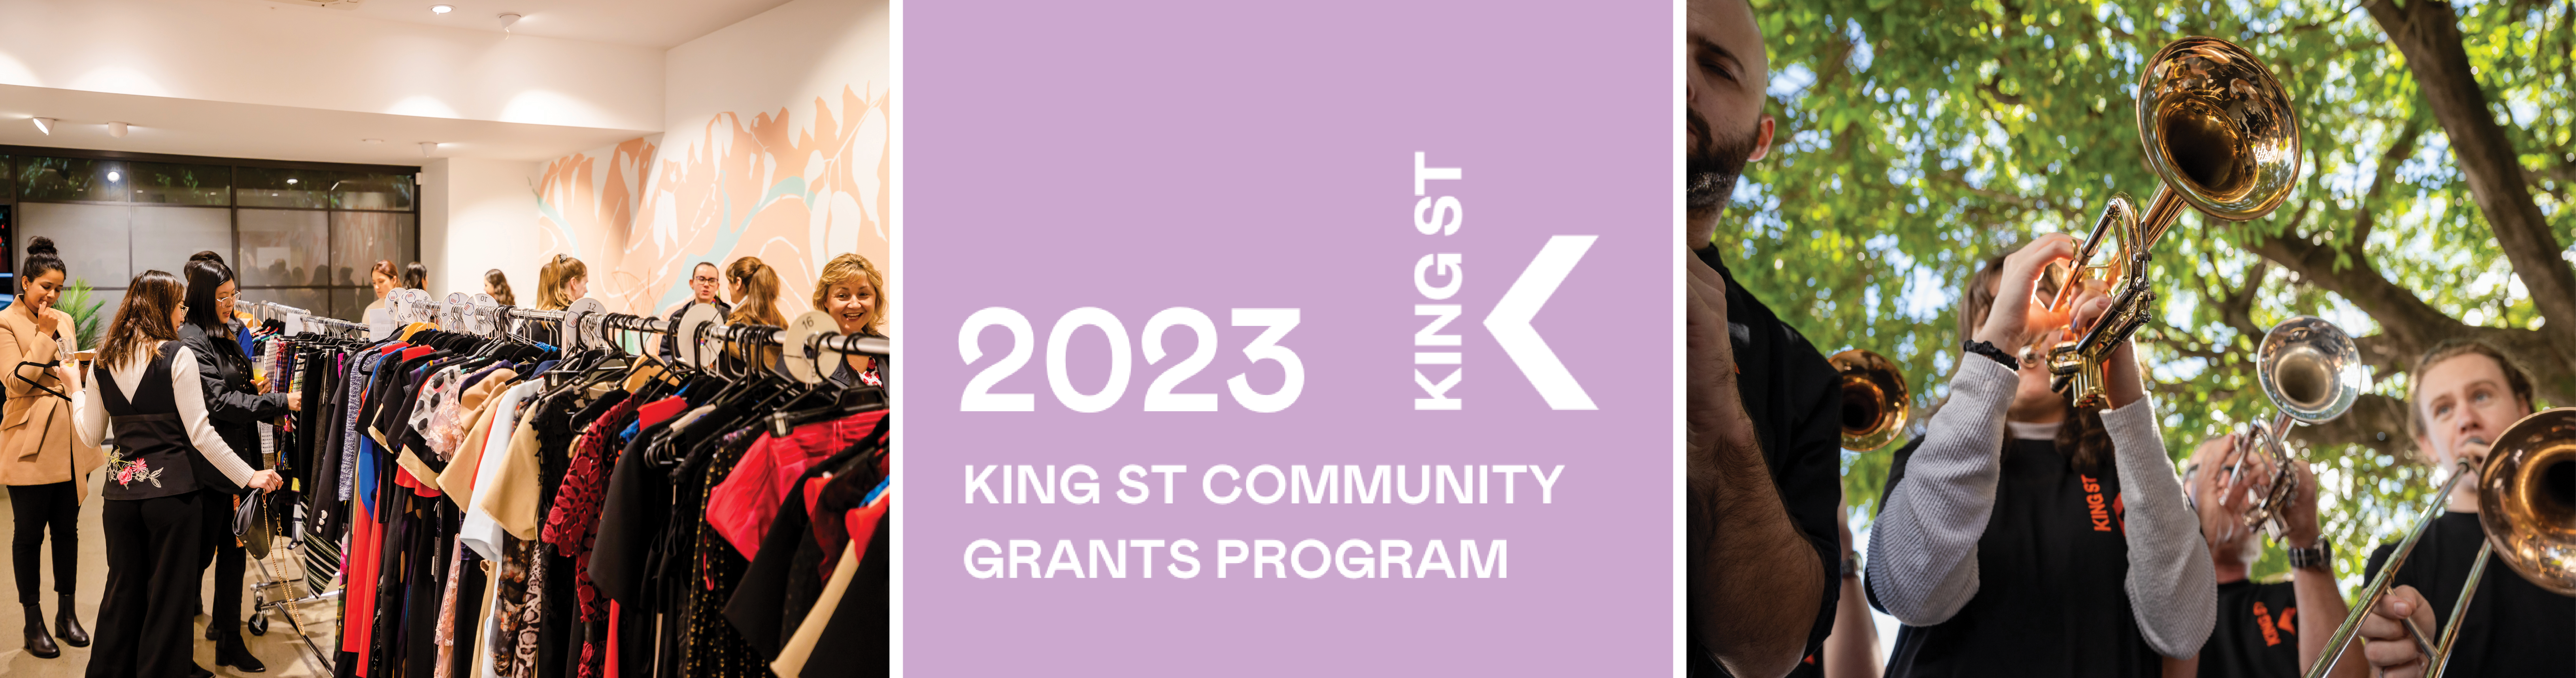 2023 King St Community Grants 1900 x500.png